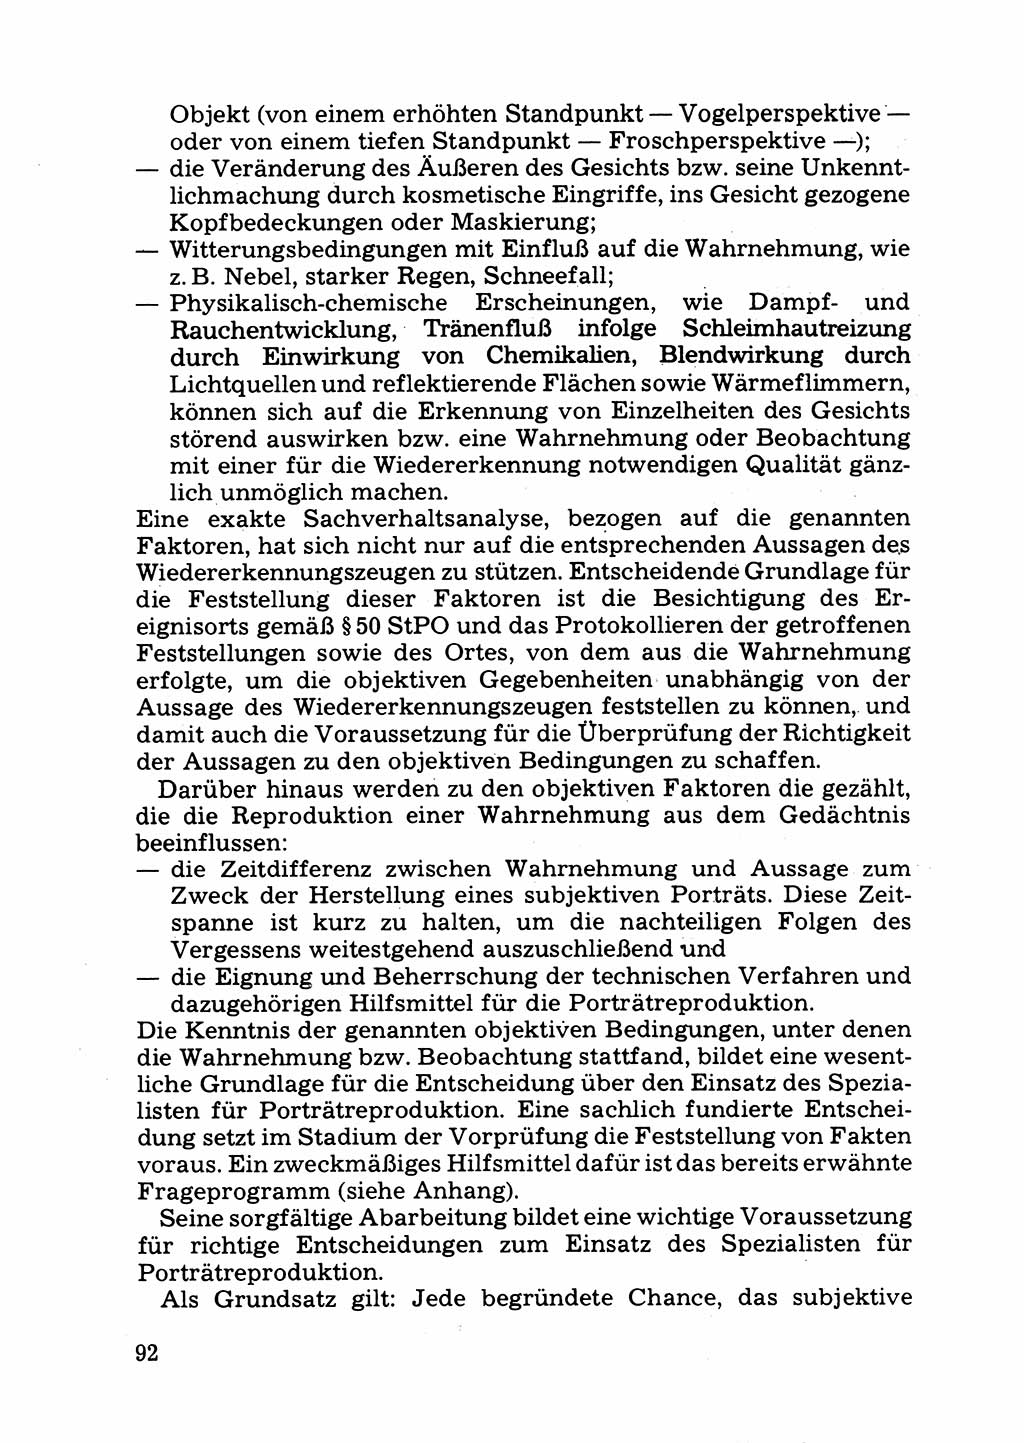 Das subjektive Porträt [Deutsche Demokratische Republik (DDR)] 1981, Seite 92 (Subj. Port. DDR 1981, S. 92)